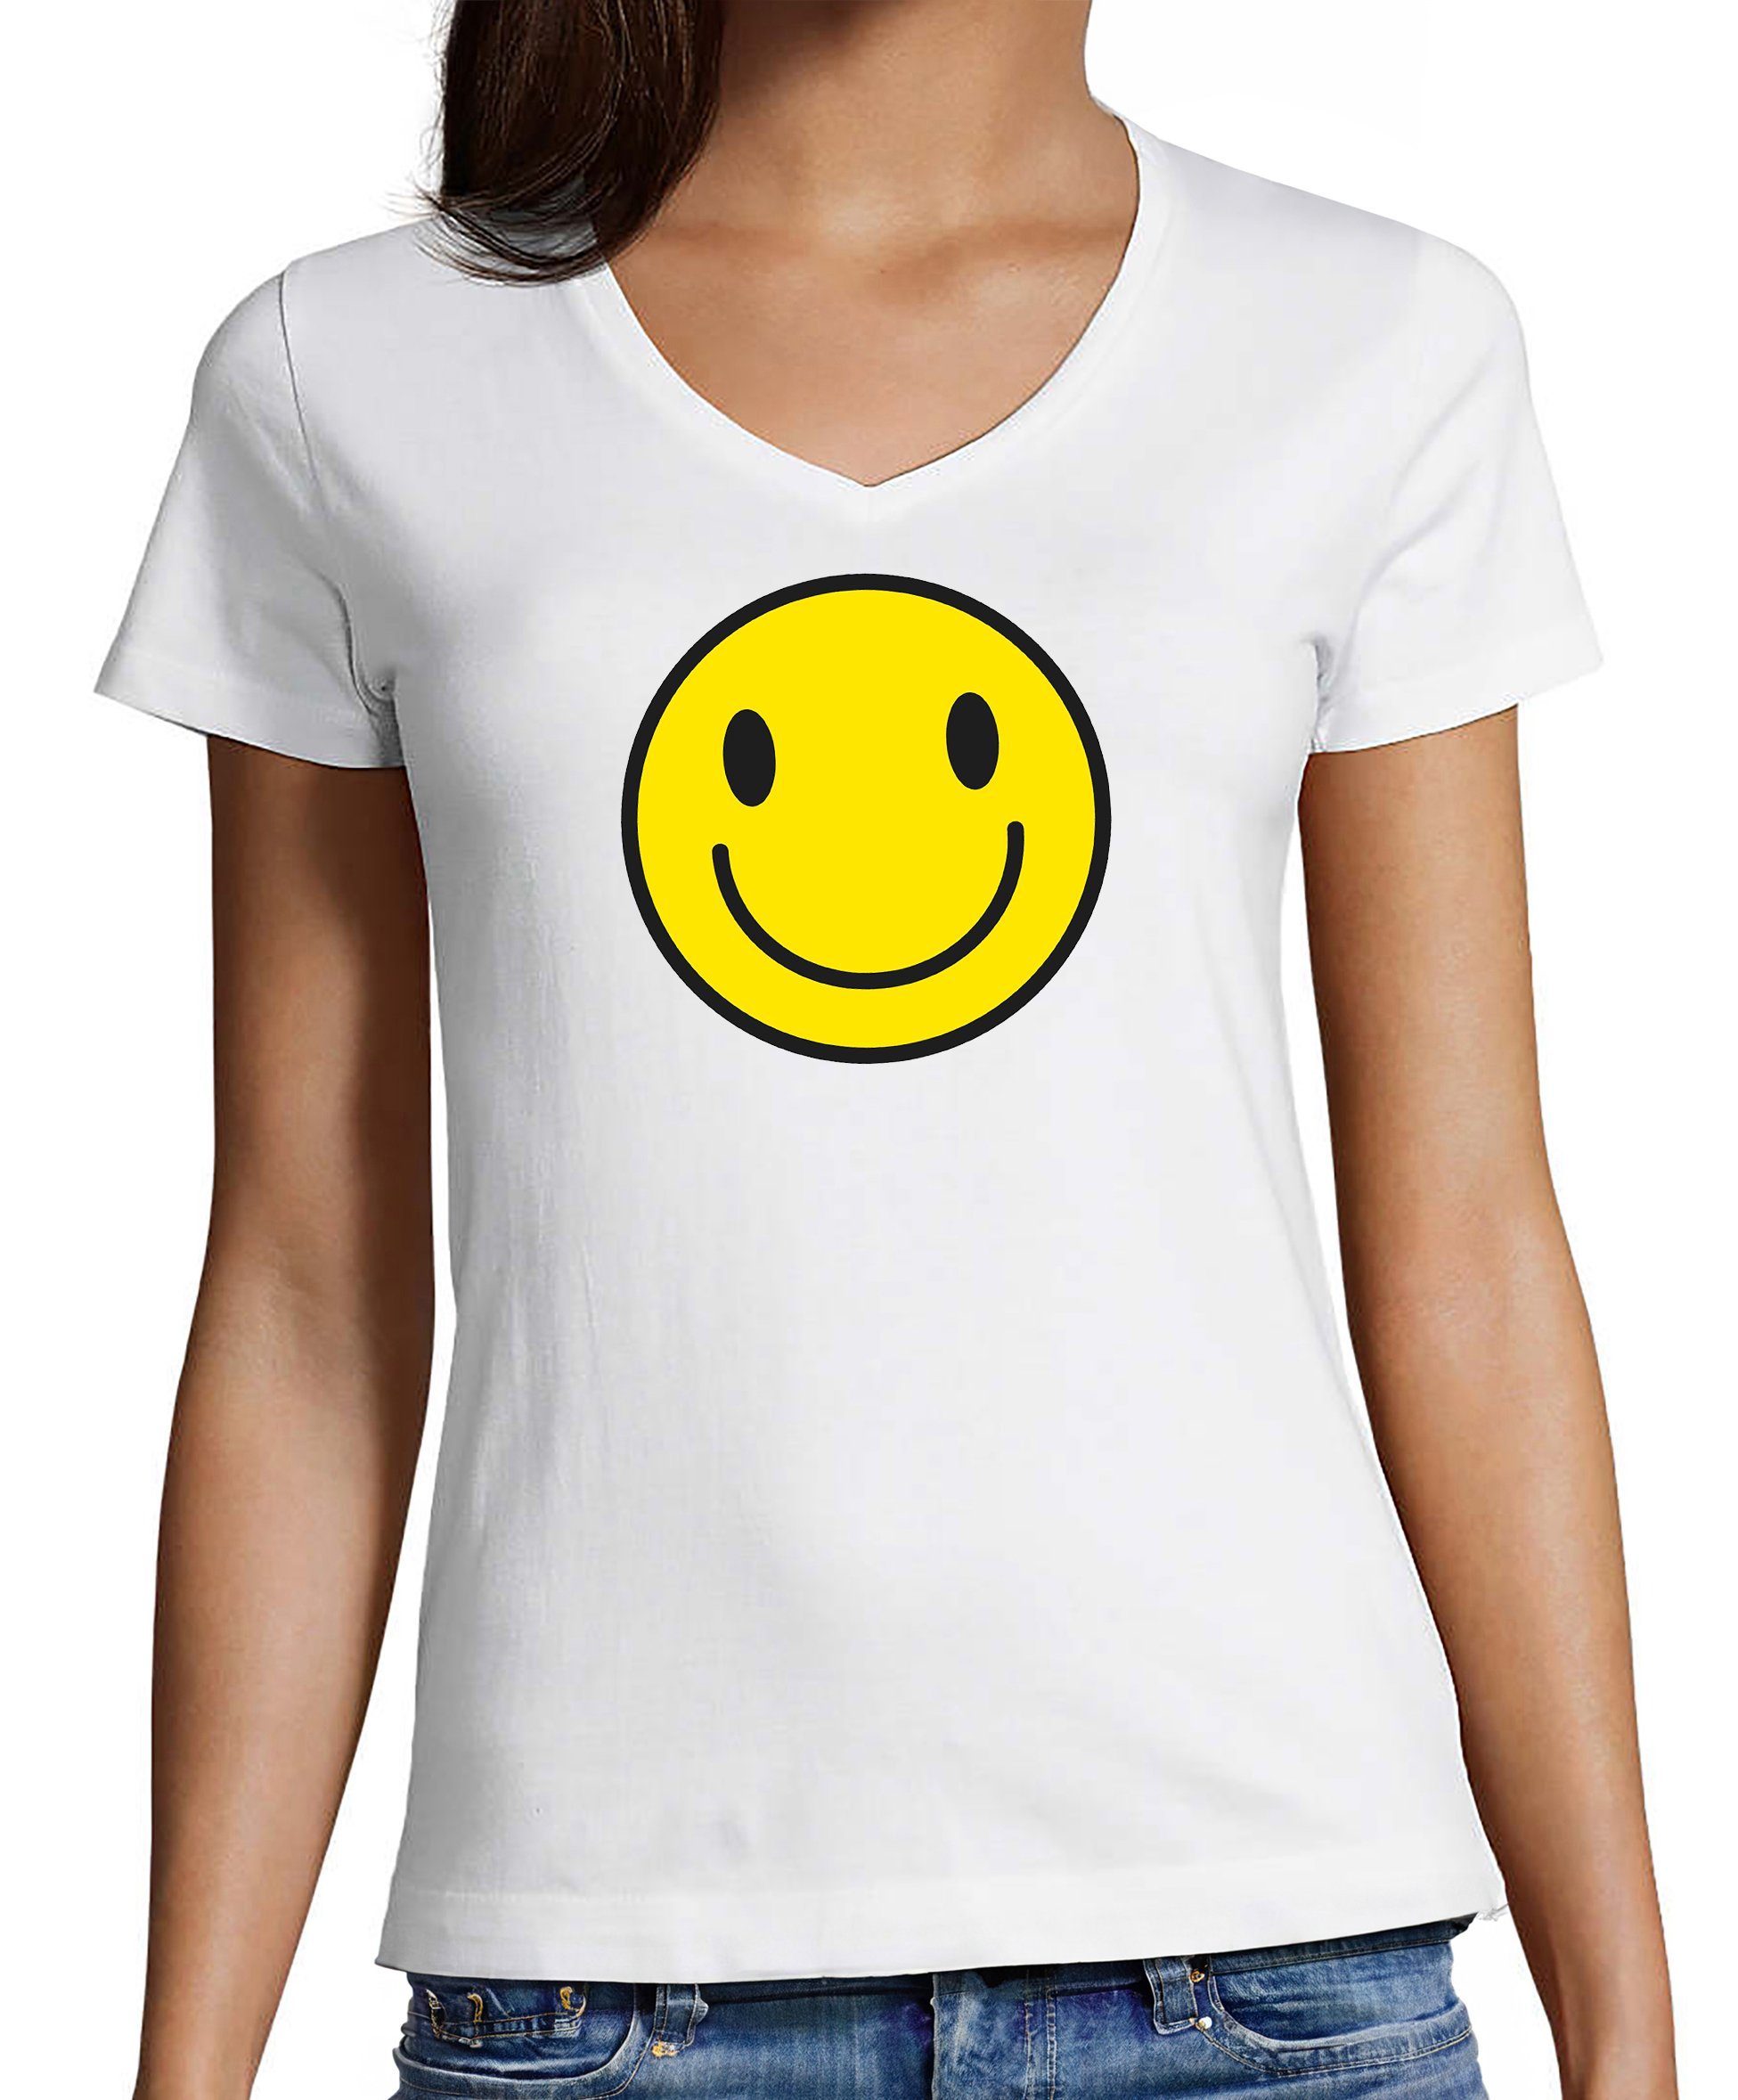 MyDesign24 T-Shirt Damen Smiley Print Shirt - Lächelnder Smiley V-Ausschnitt Baumwollshirt mit Aufdruck Slim Fit, i281 weiss